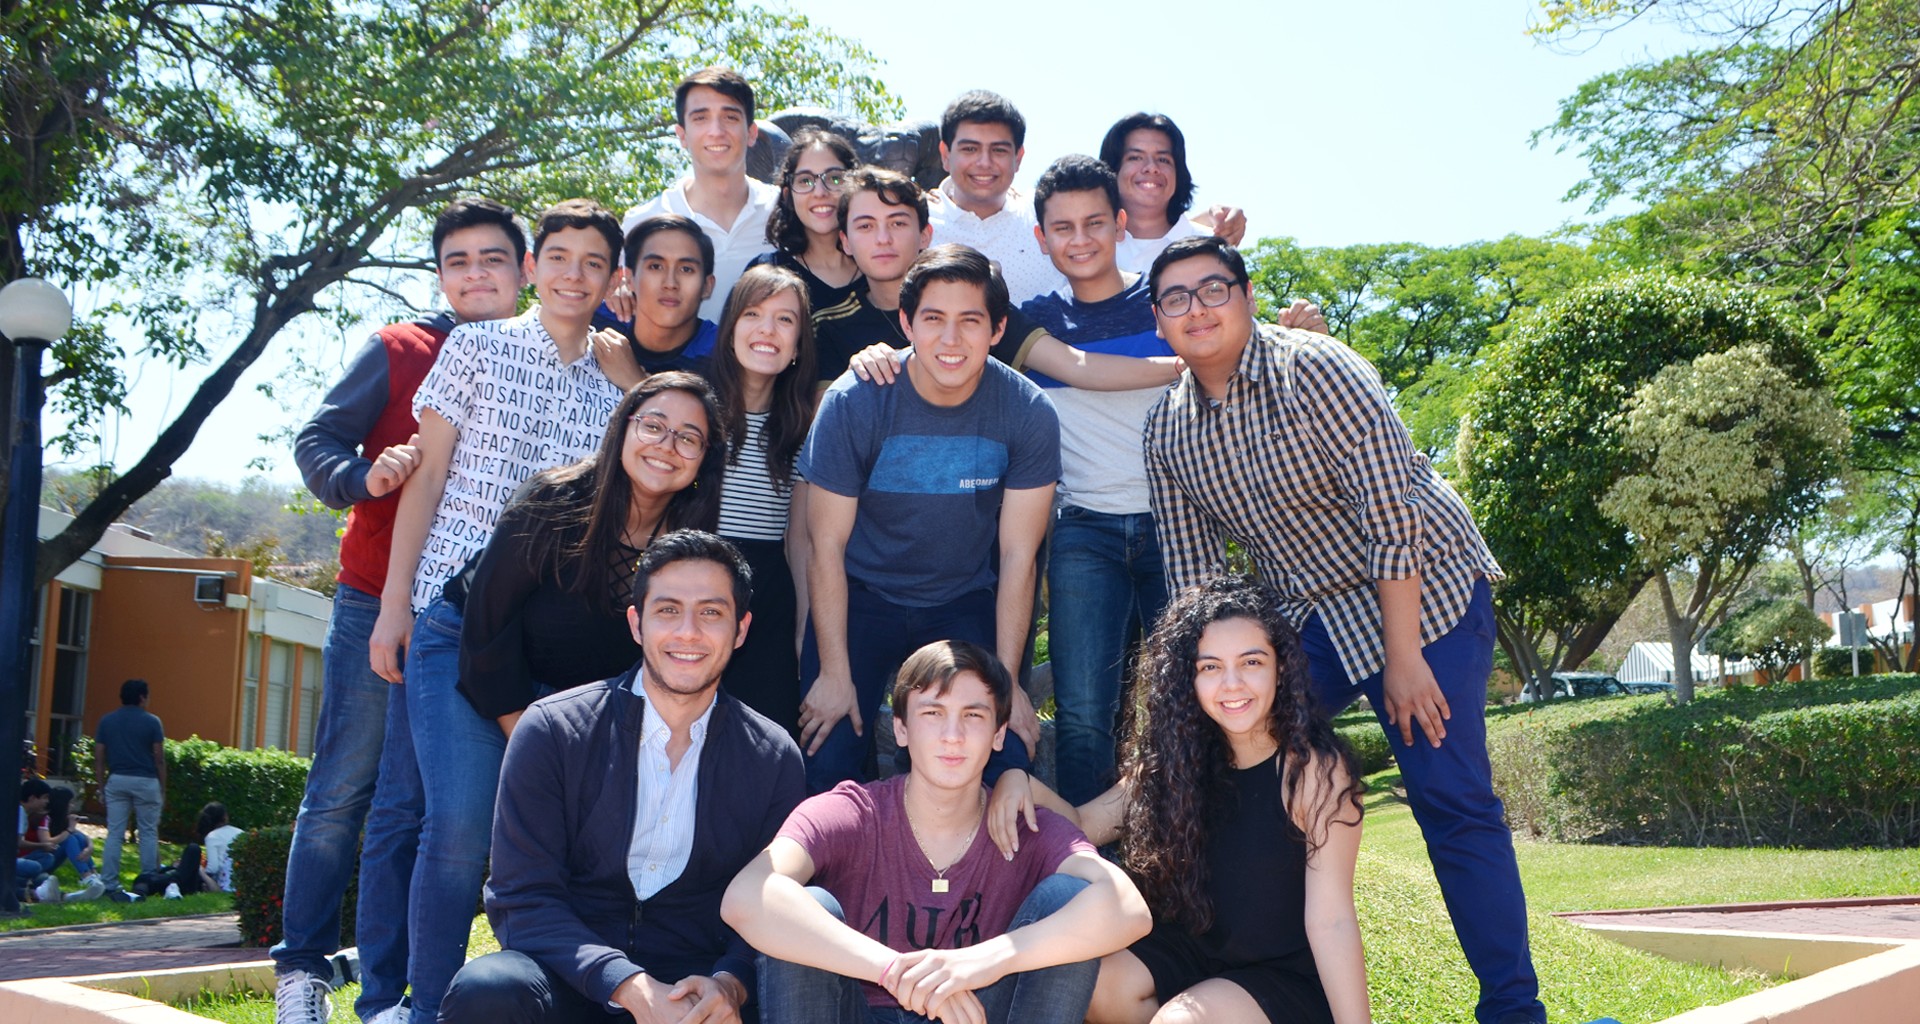 La Delegación de Chiapas posando en el Borrego del Campus